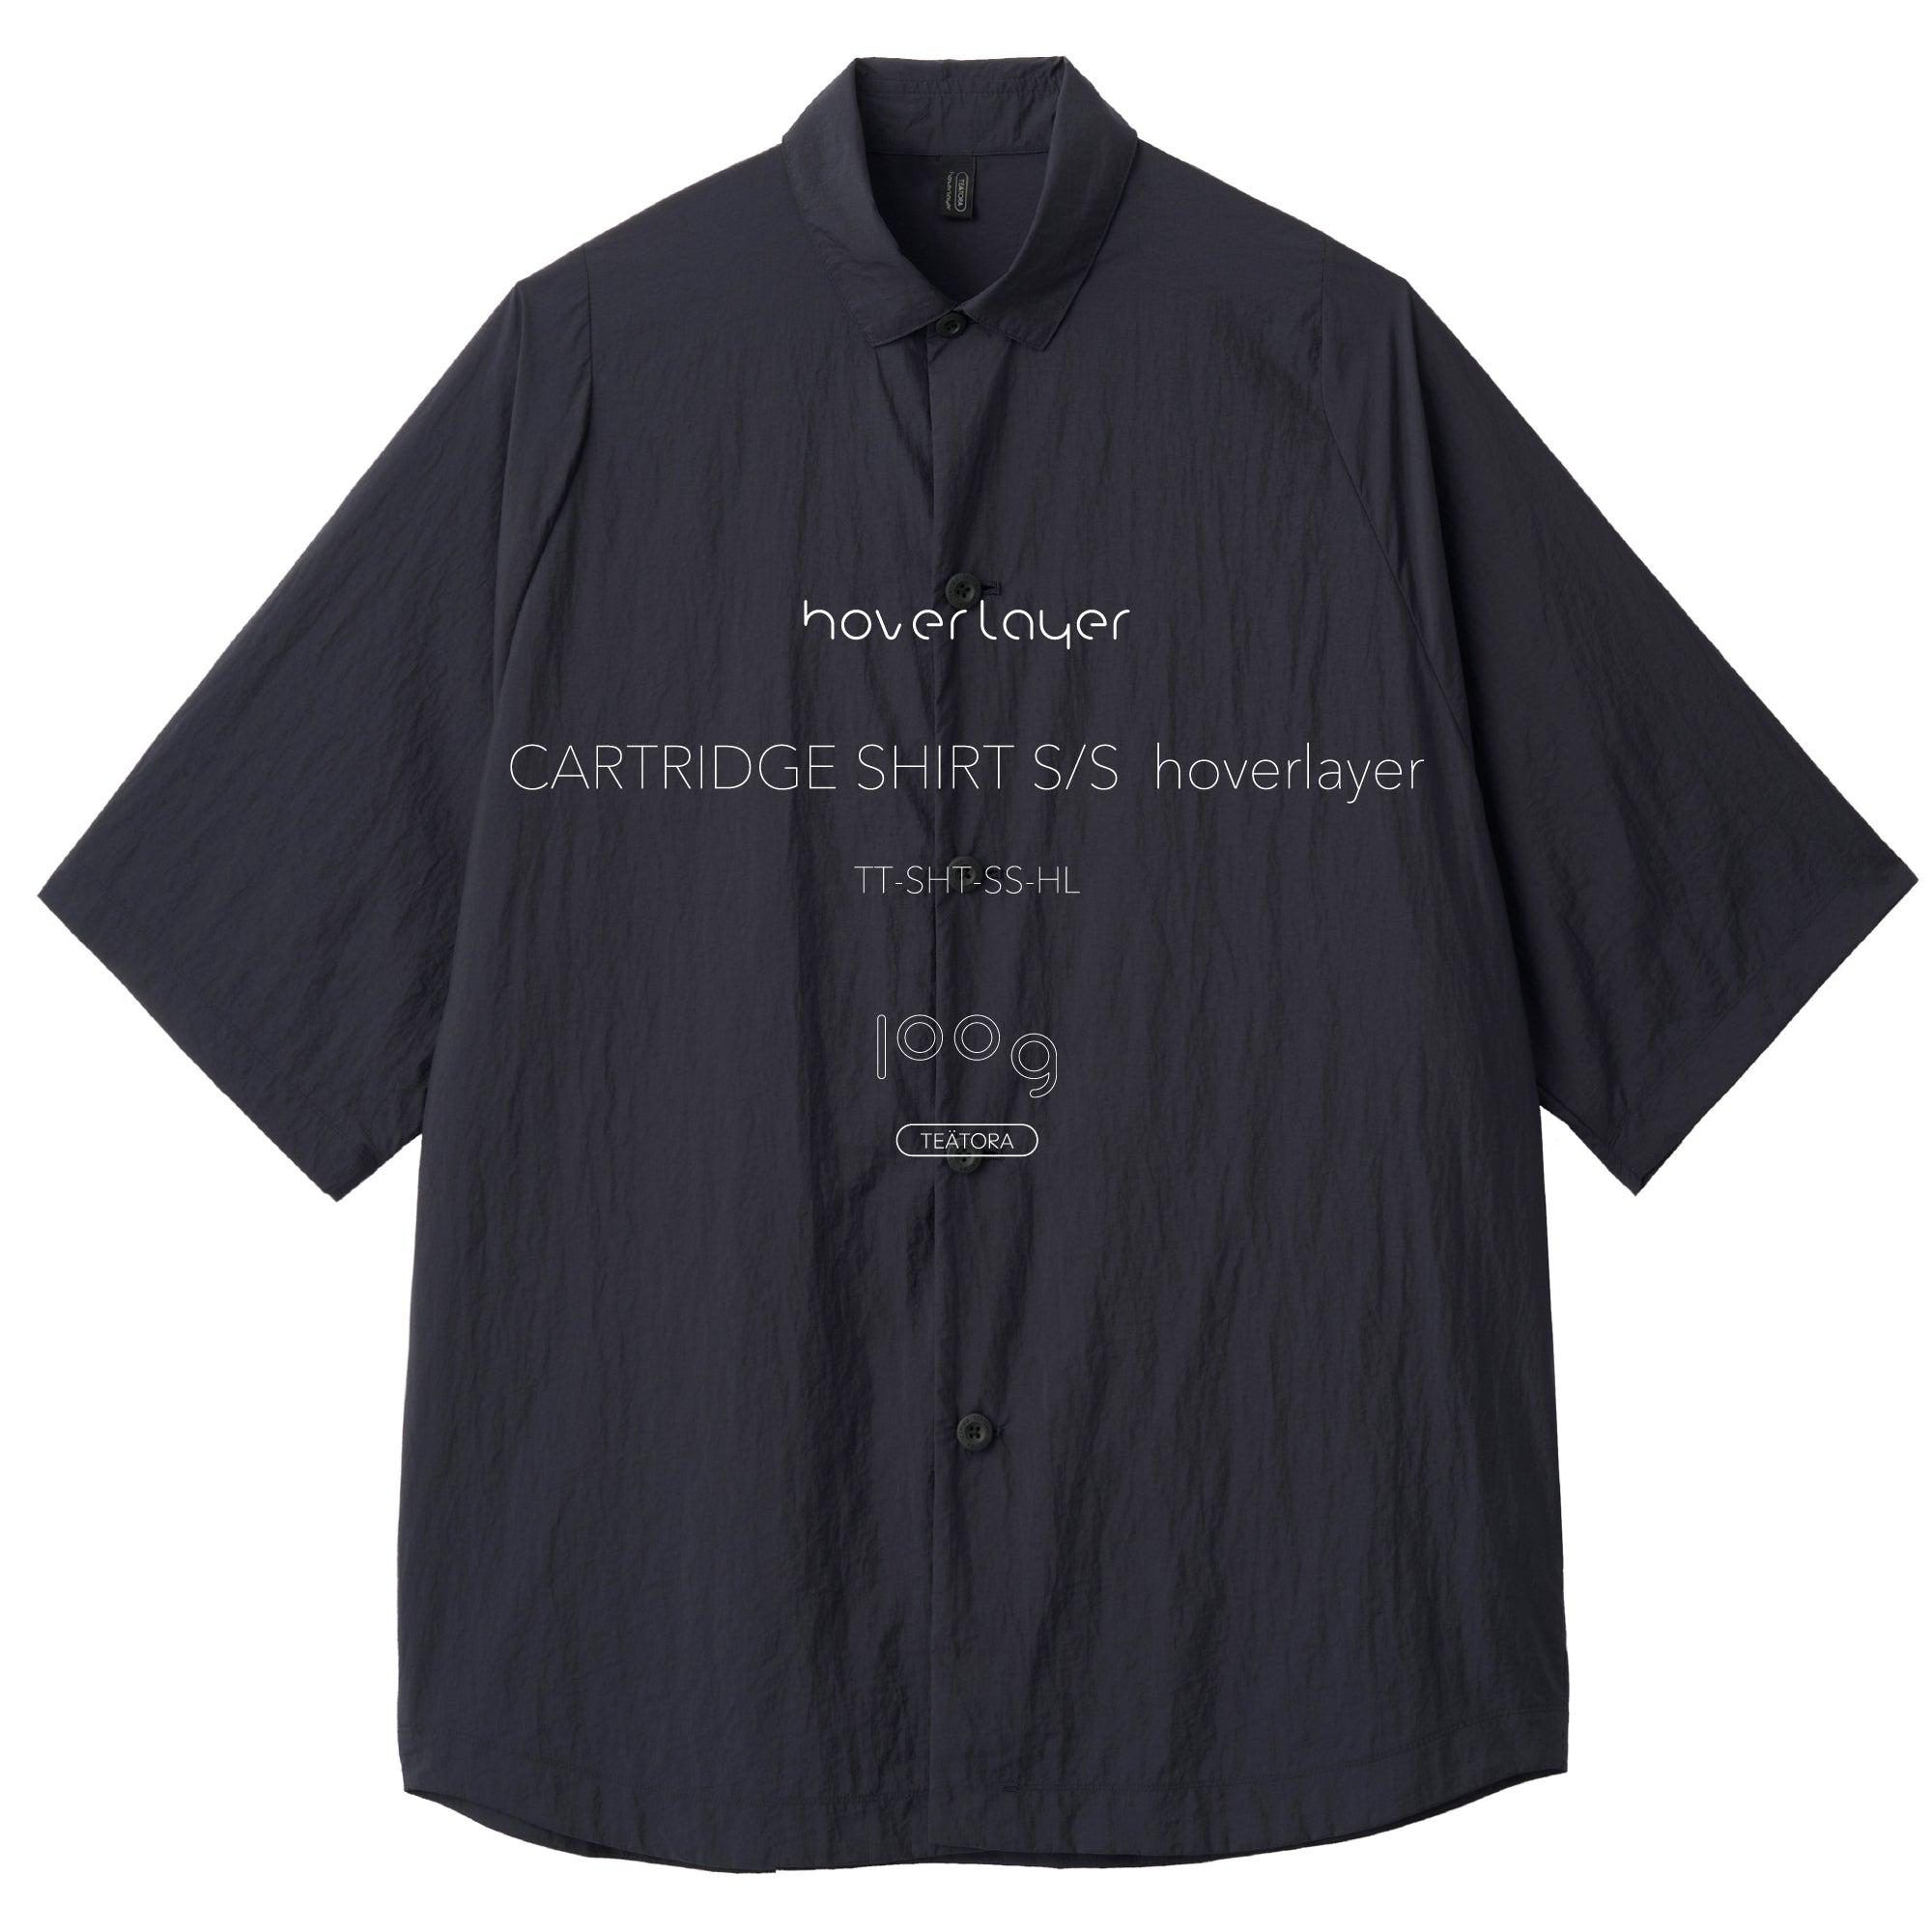 カートリッジシャツTeatora cartridge shirt HL 2サイズ